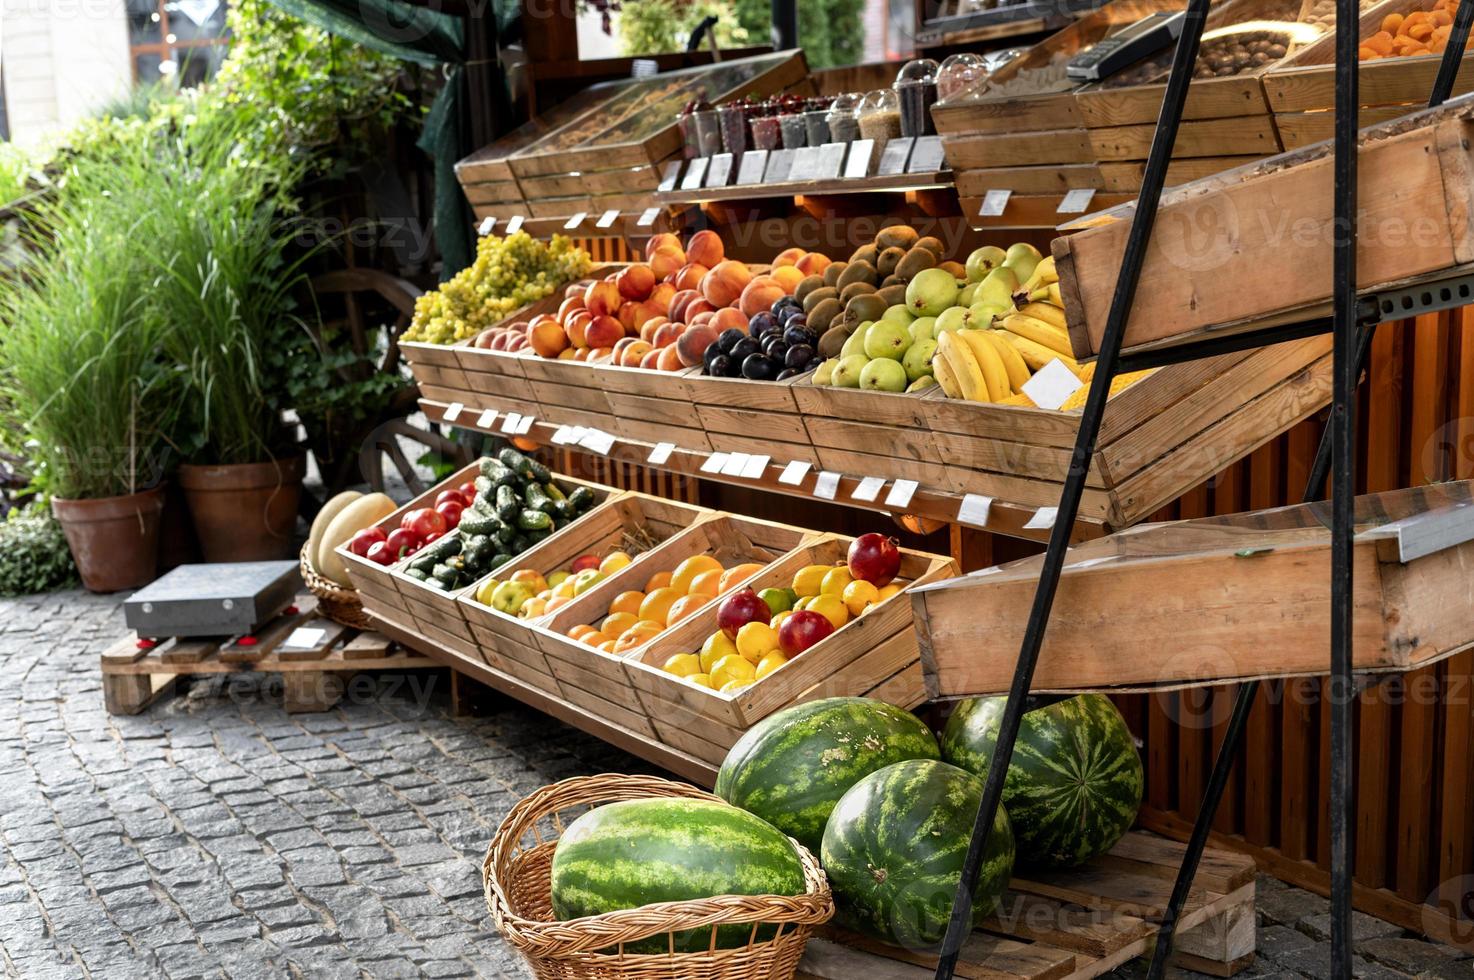 fruit staan Bij een straat markt buiten met biologisch watermeloenen, sinaasappelen, citroenen in houten kratten klein bedrijf veganistisch gezond voedsel foto